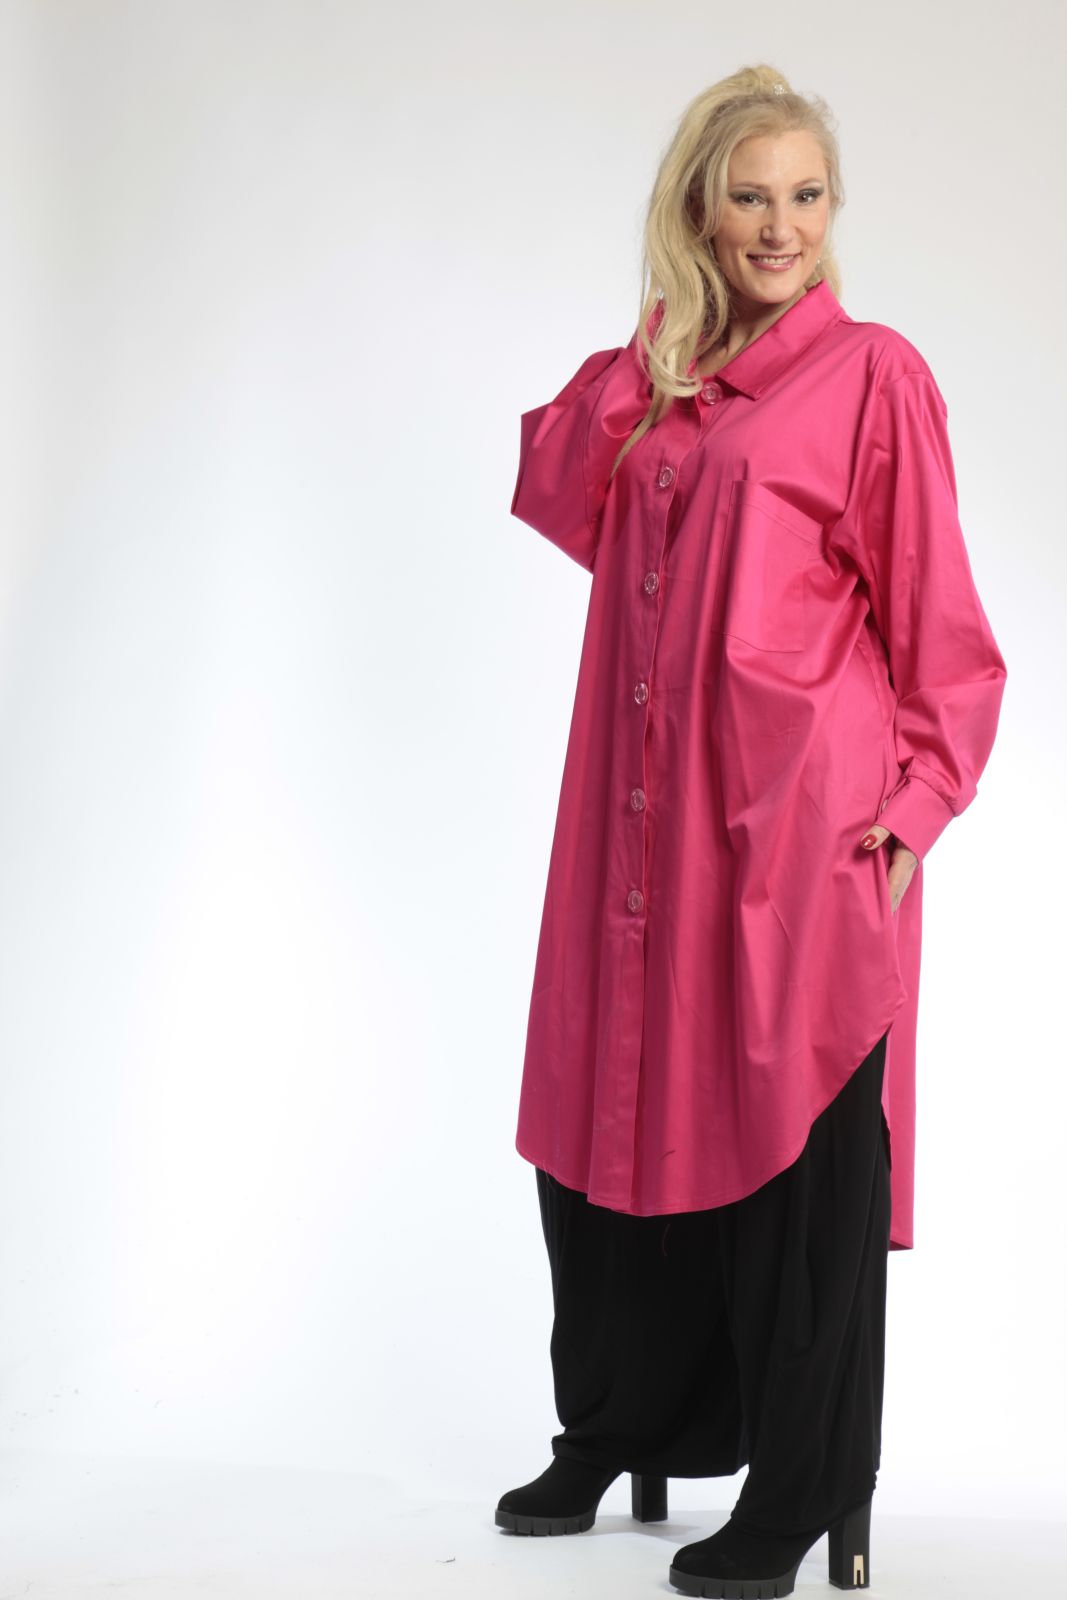 Alltags Bluse in Form aus er Satin Qualität, Pink Lagenlook Oversize Mode B2B Großhandel